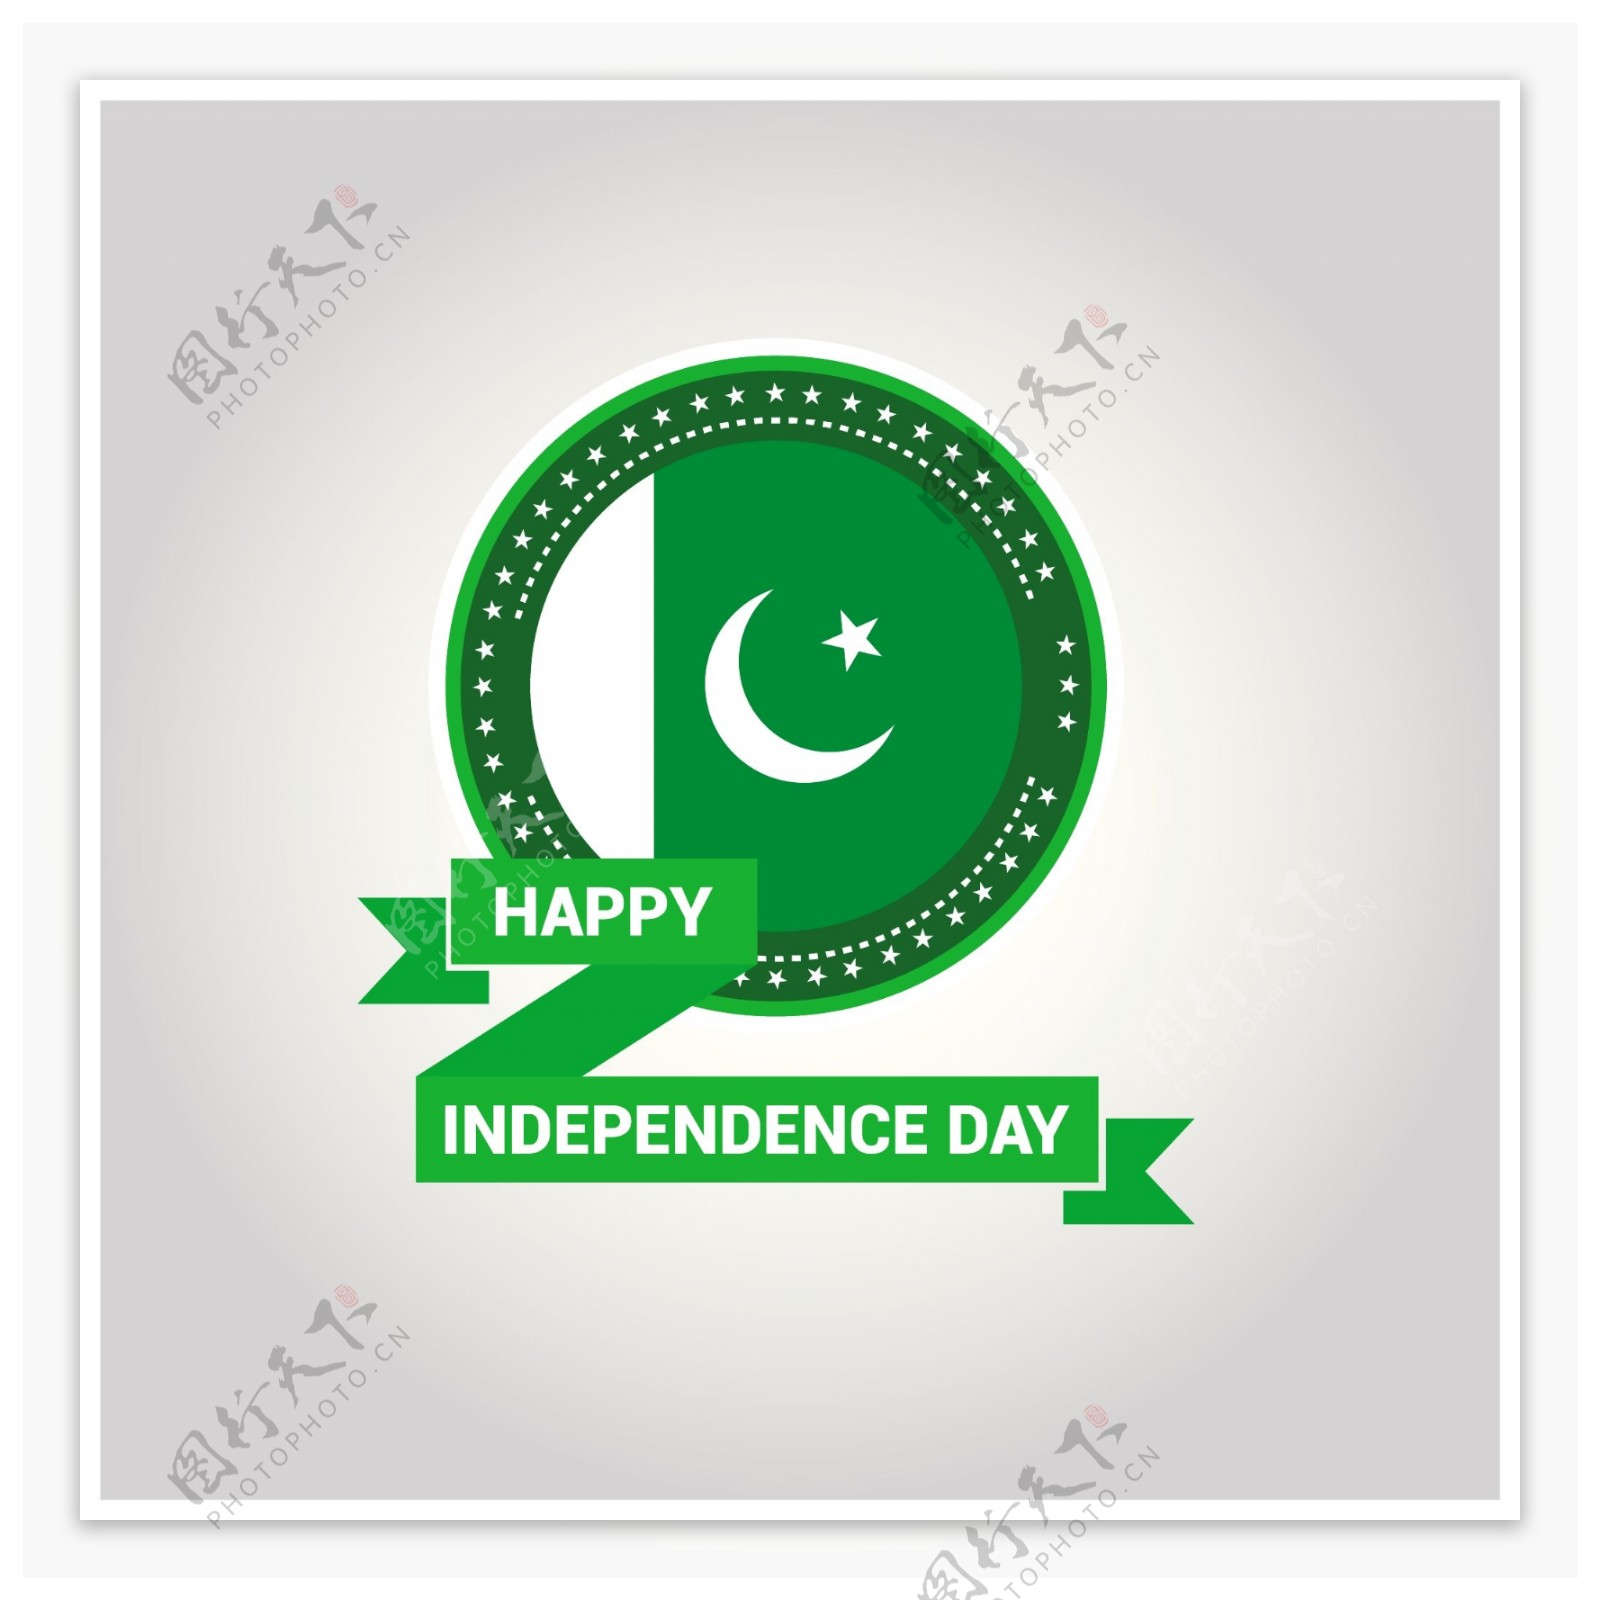 巴基斯坦独立日徽章设计